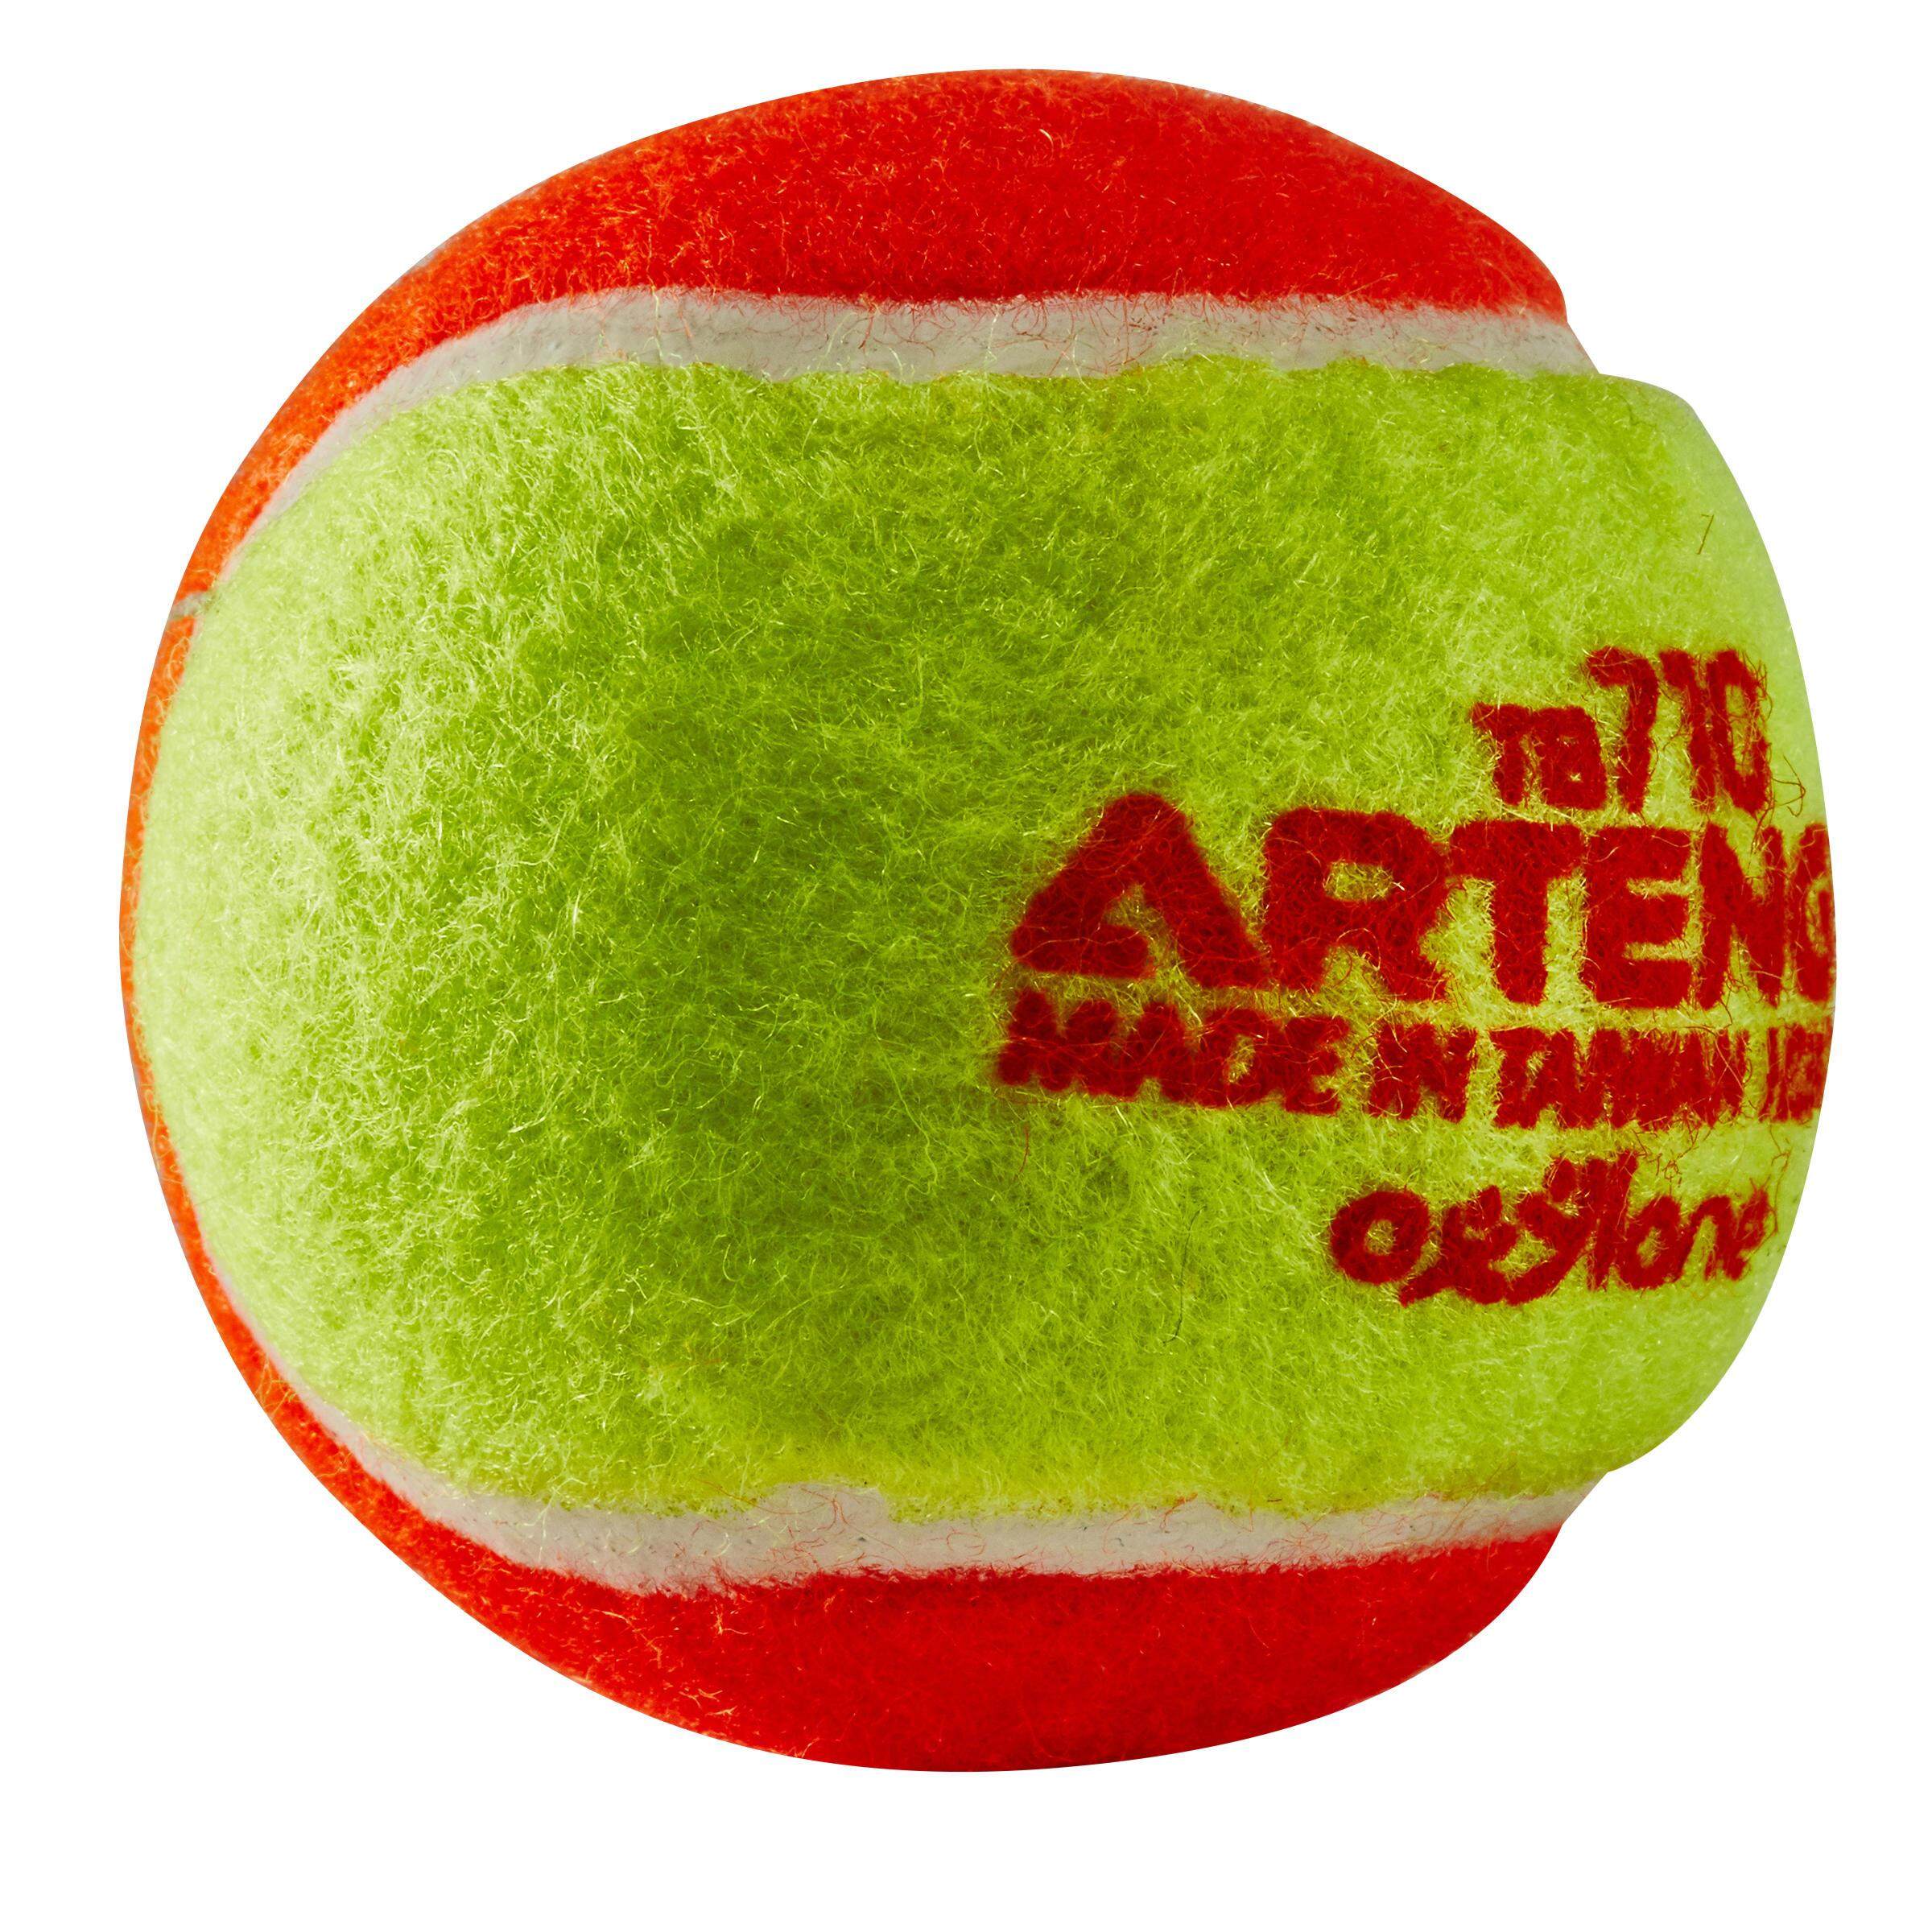 [ด่วน!! โปรโมชั่นมีจำนวนจำกัด] ลูกเทนนิส TB110 (สีส้ม) สำหรับ เทนนิส  สควอช  แบดบินตัน  … เทนนิส เทนนิส